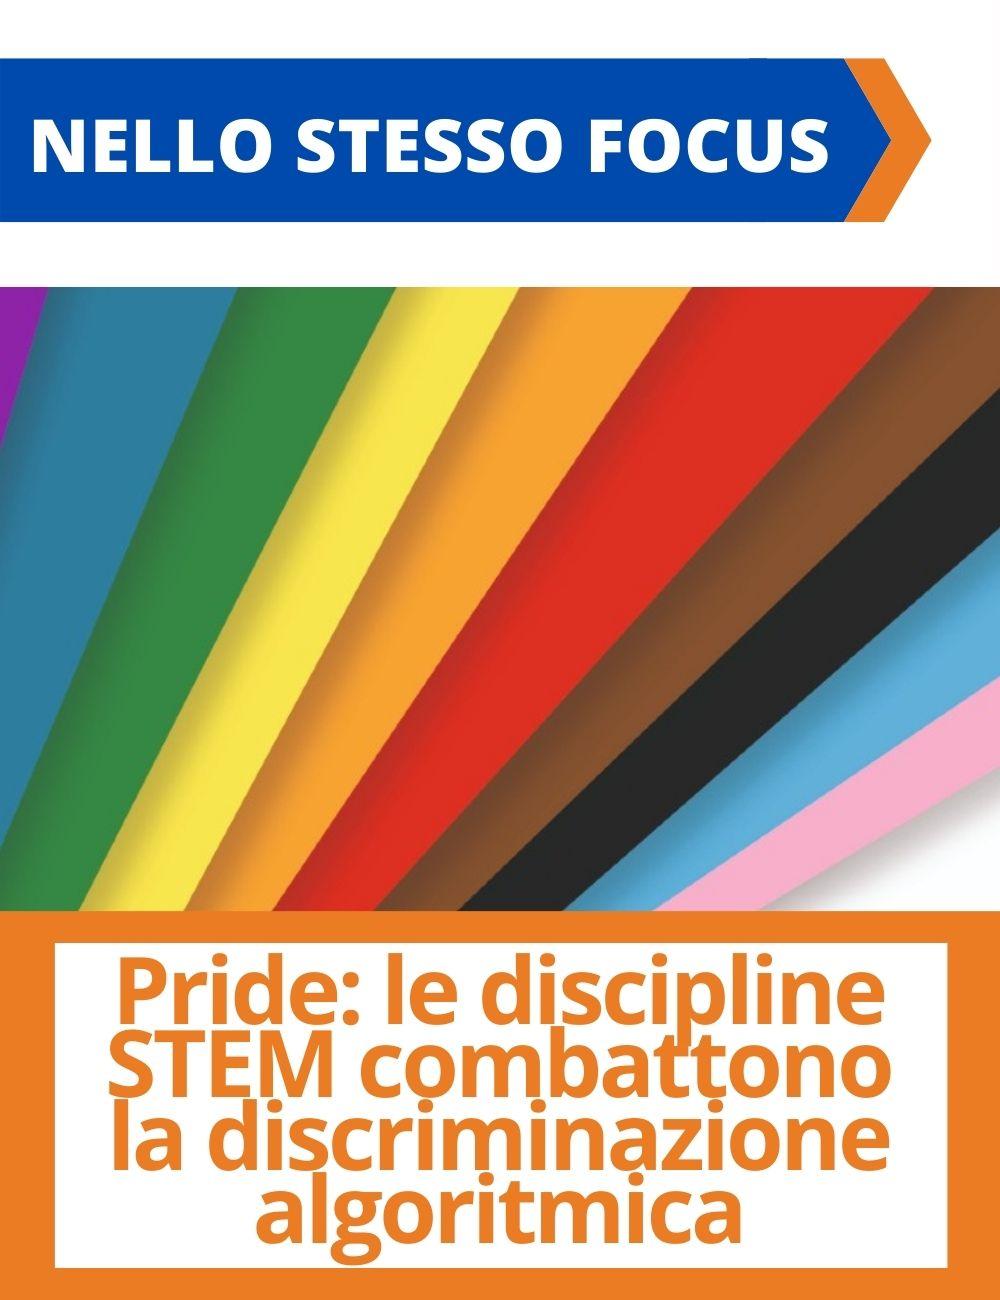 Immagine con link ad articoli su temi simili. L'immagine che raffigura i colori dell'arcobaleno rimanda all'articolo intitolato: Pride: le discipline STEM combattono la discriminazione algoritmica